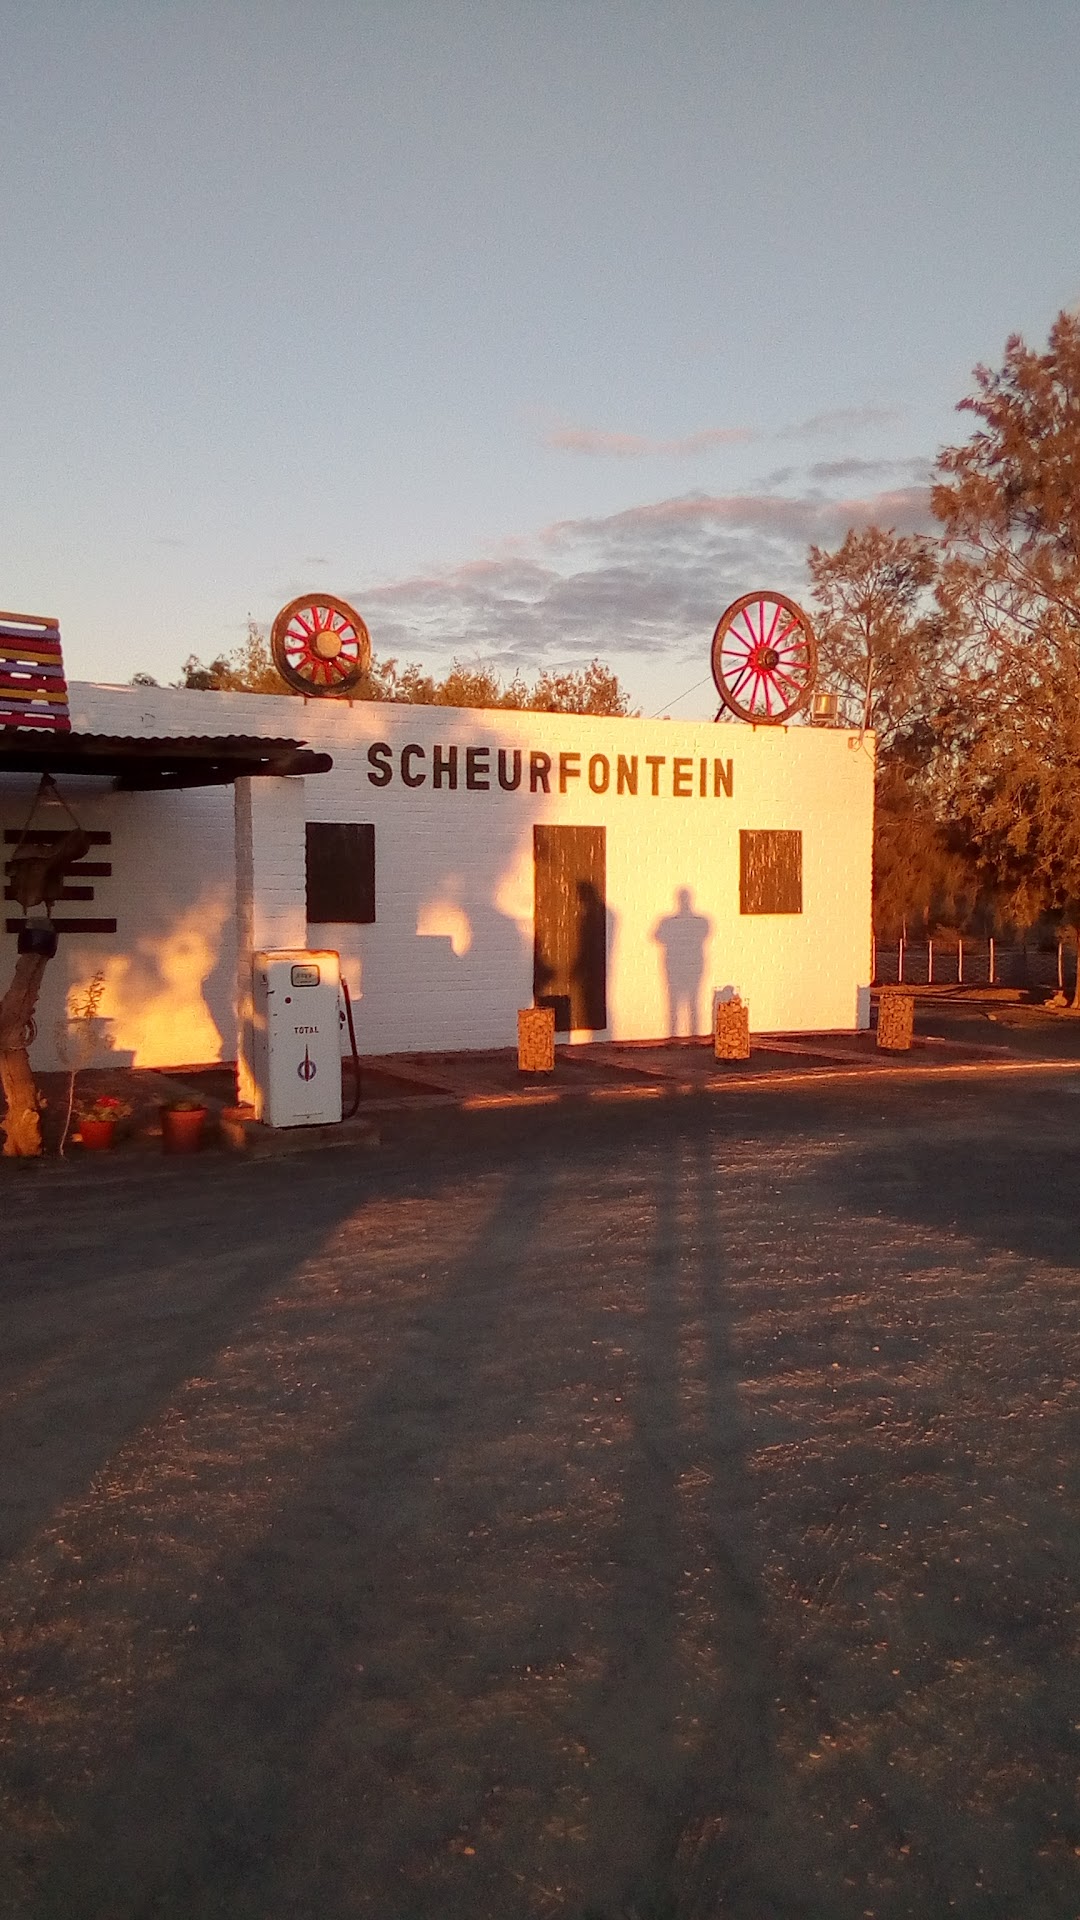 Scheurfontein Farm Stall